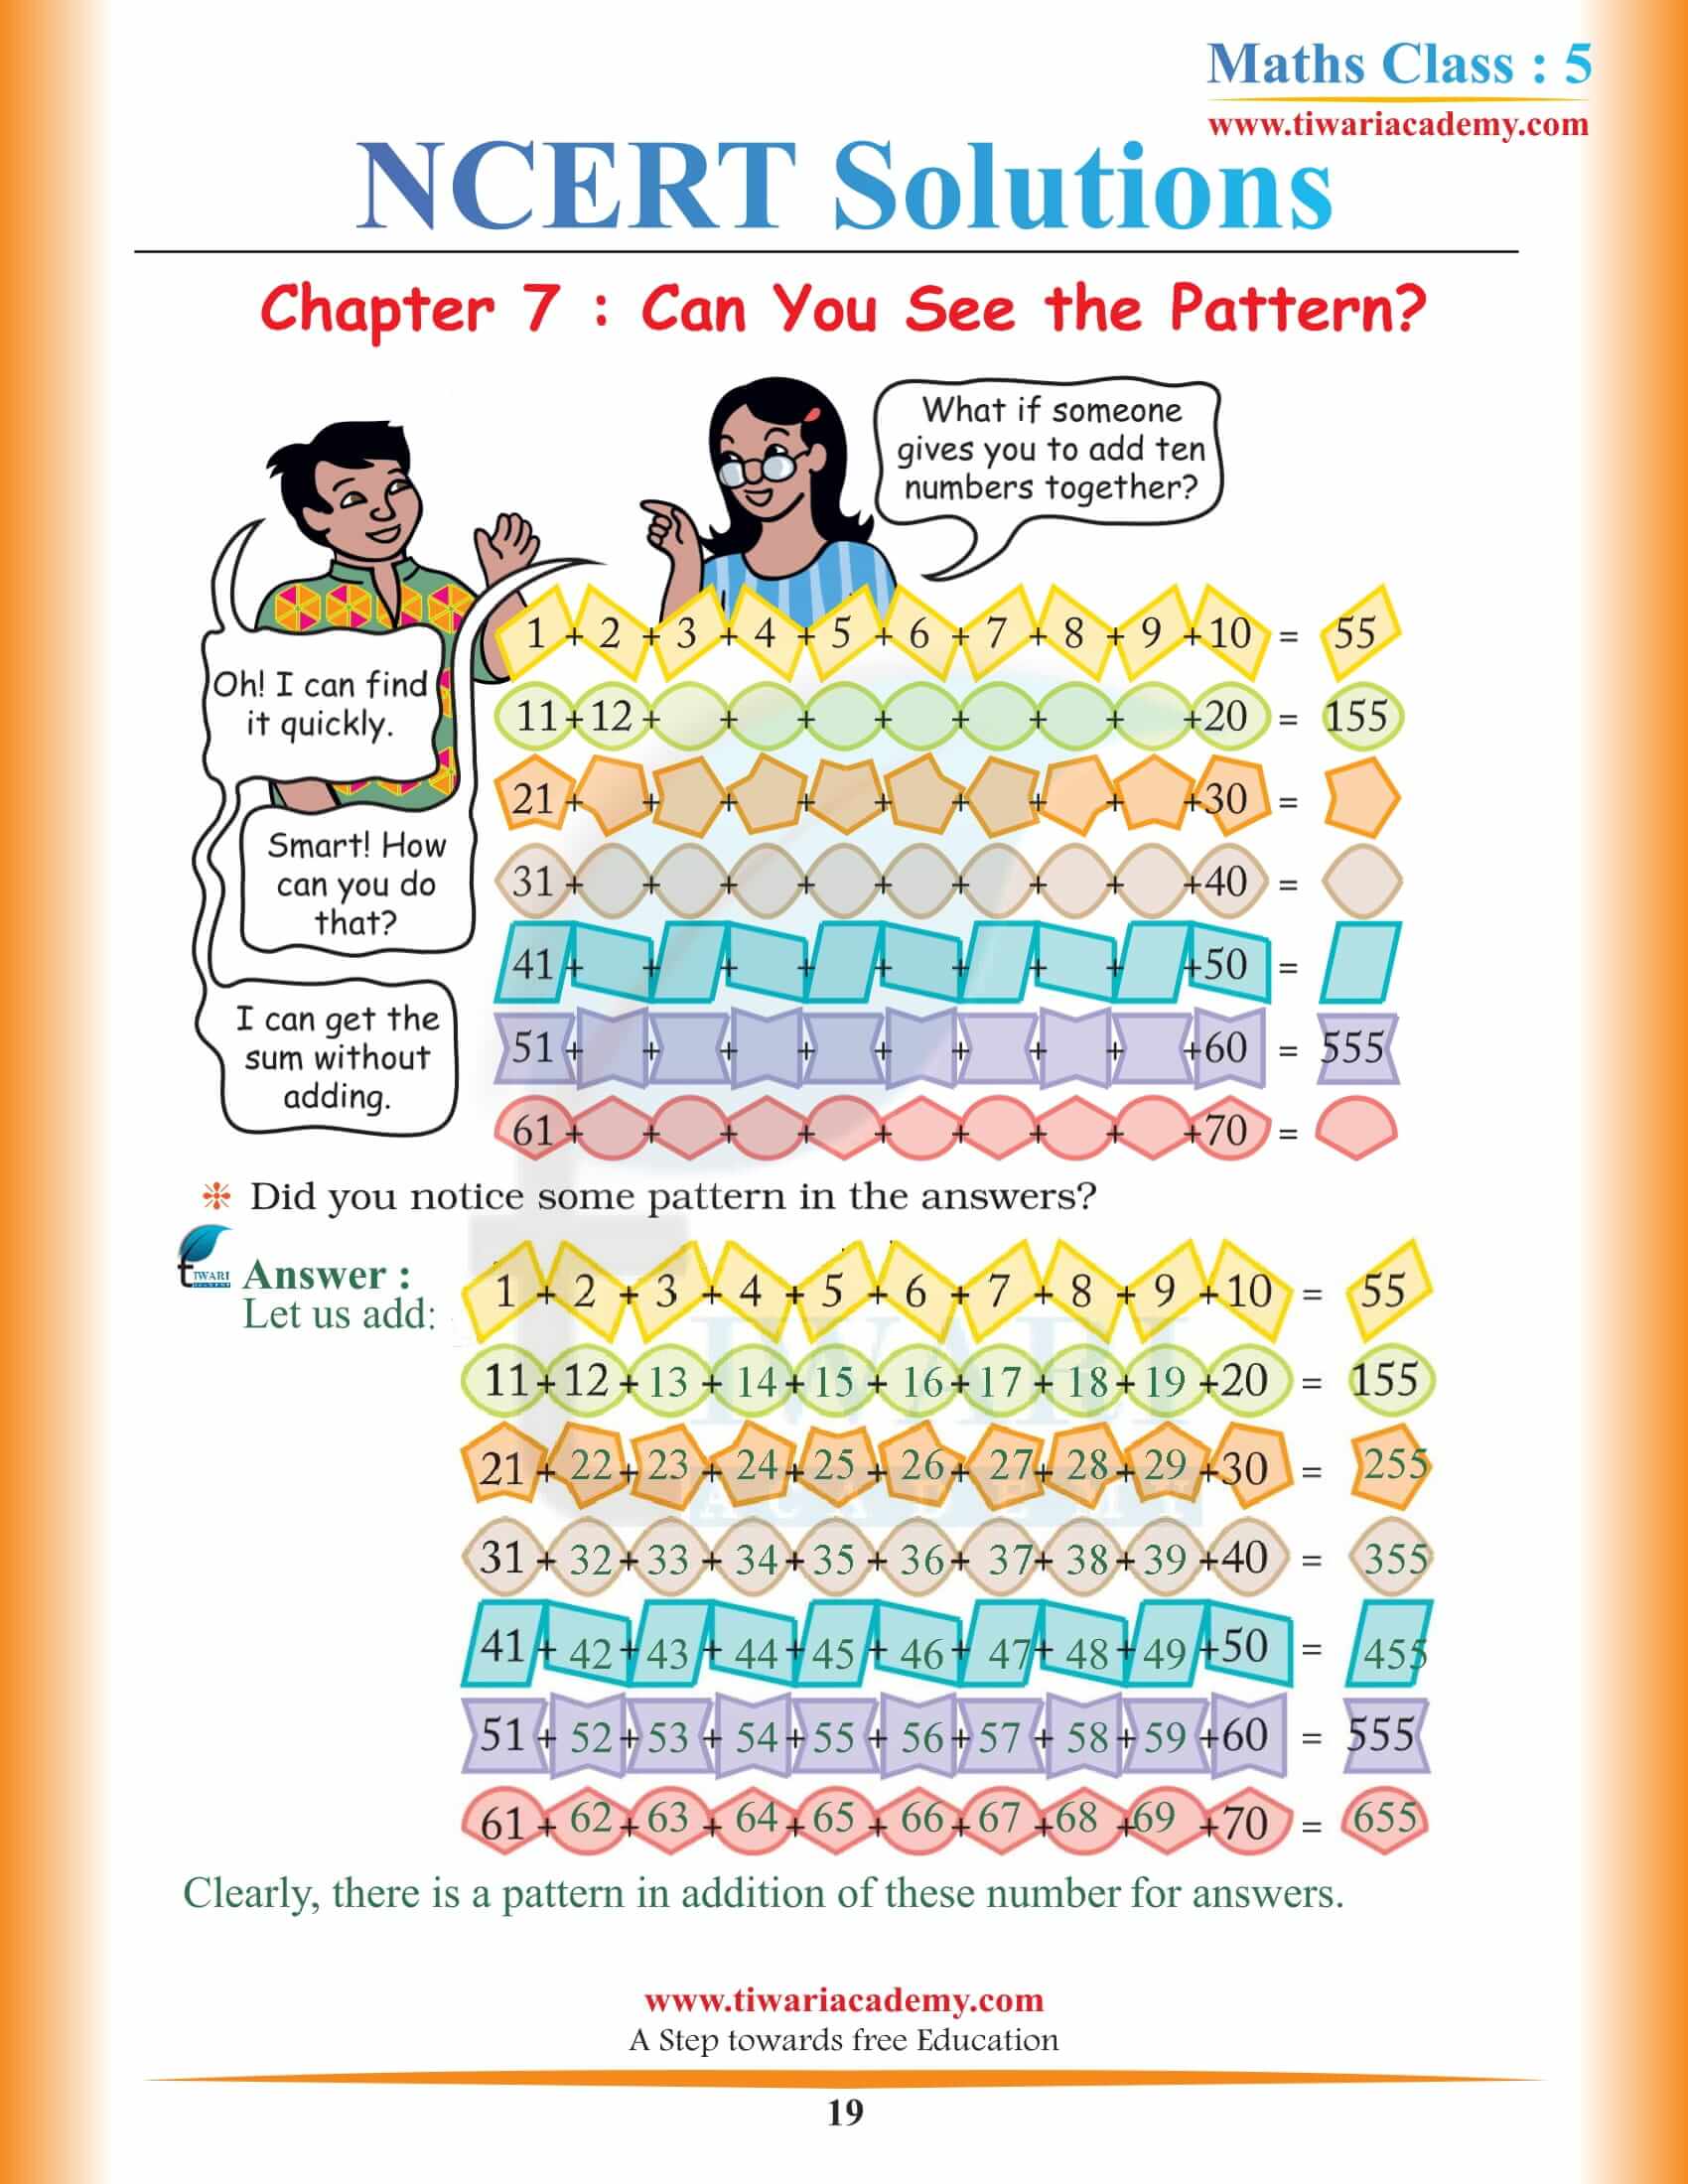 Class 5 Maths Chapter 7 NCERT question Answers